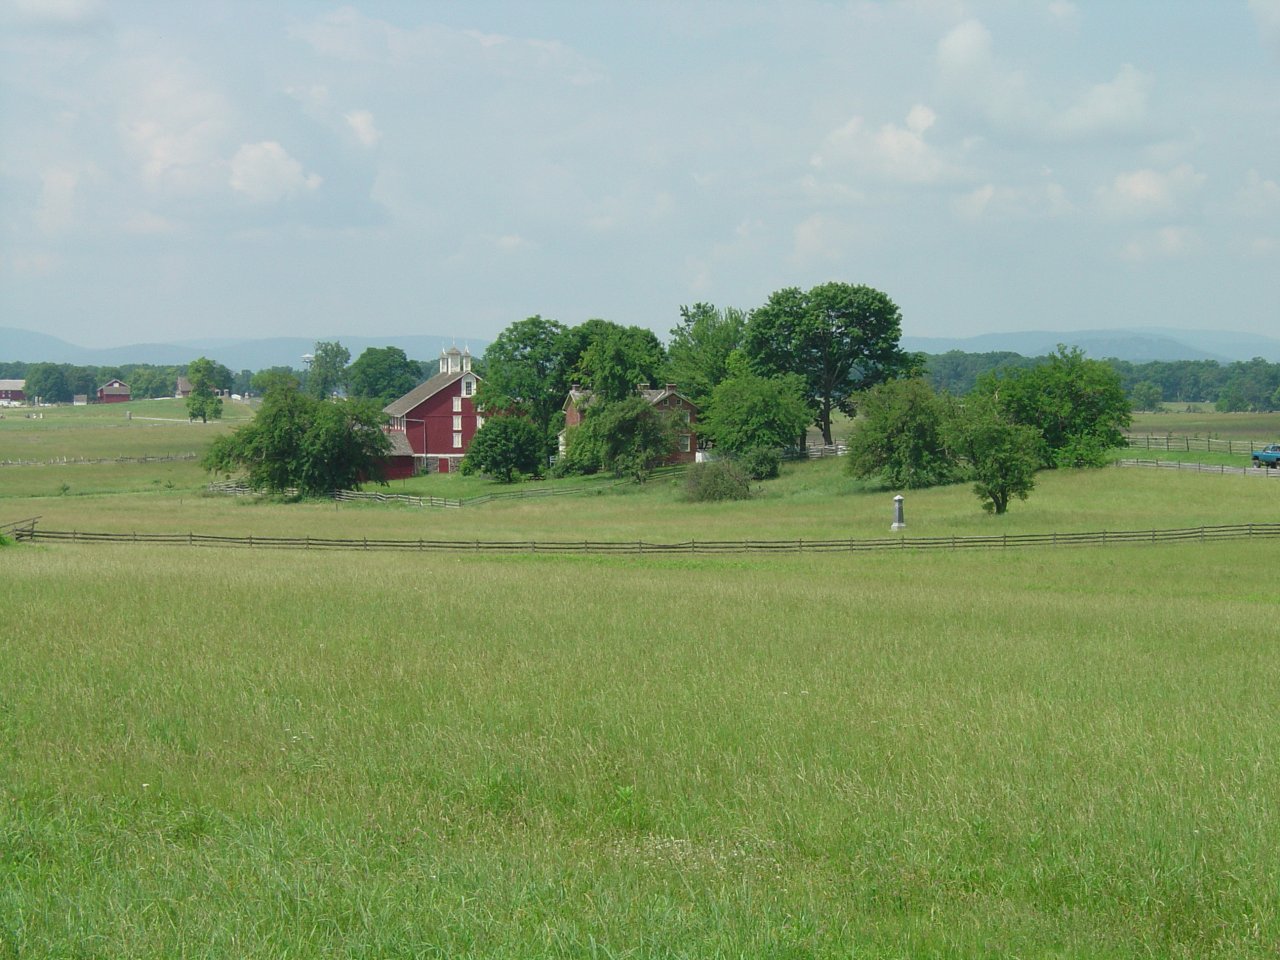 View across field